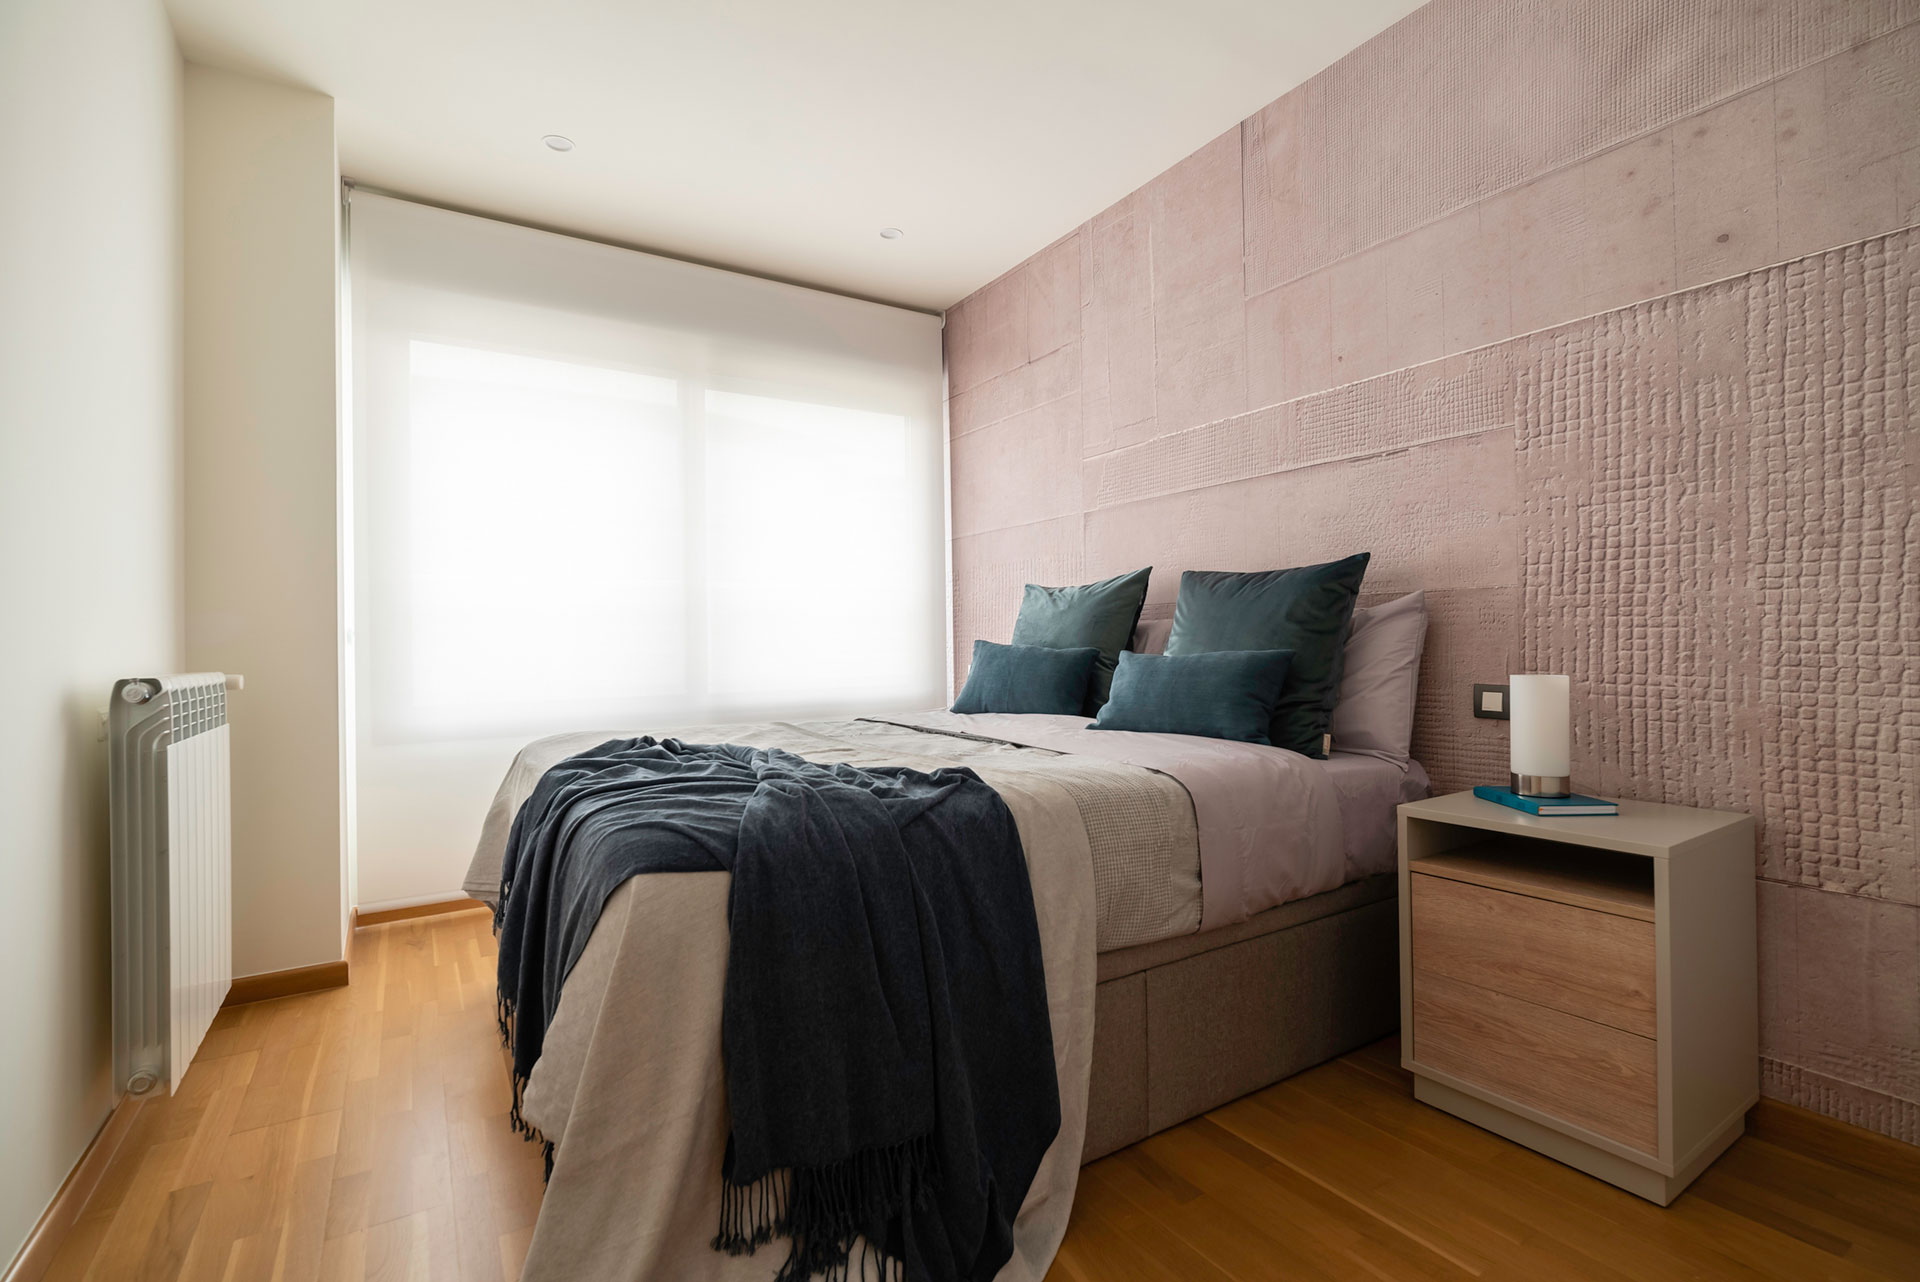 Camera da letto – Progetto Urban Soul by GAP Interiorismo